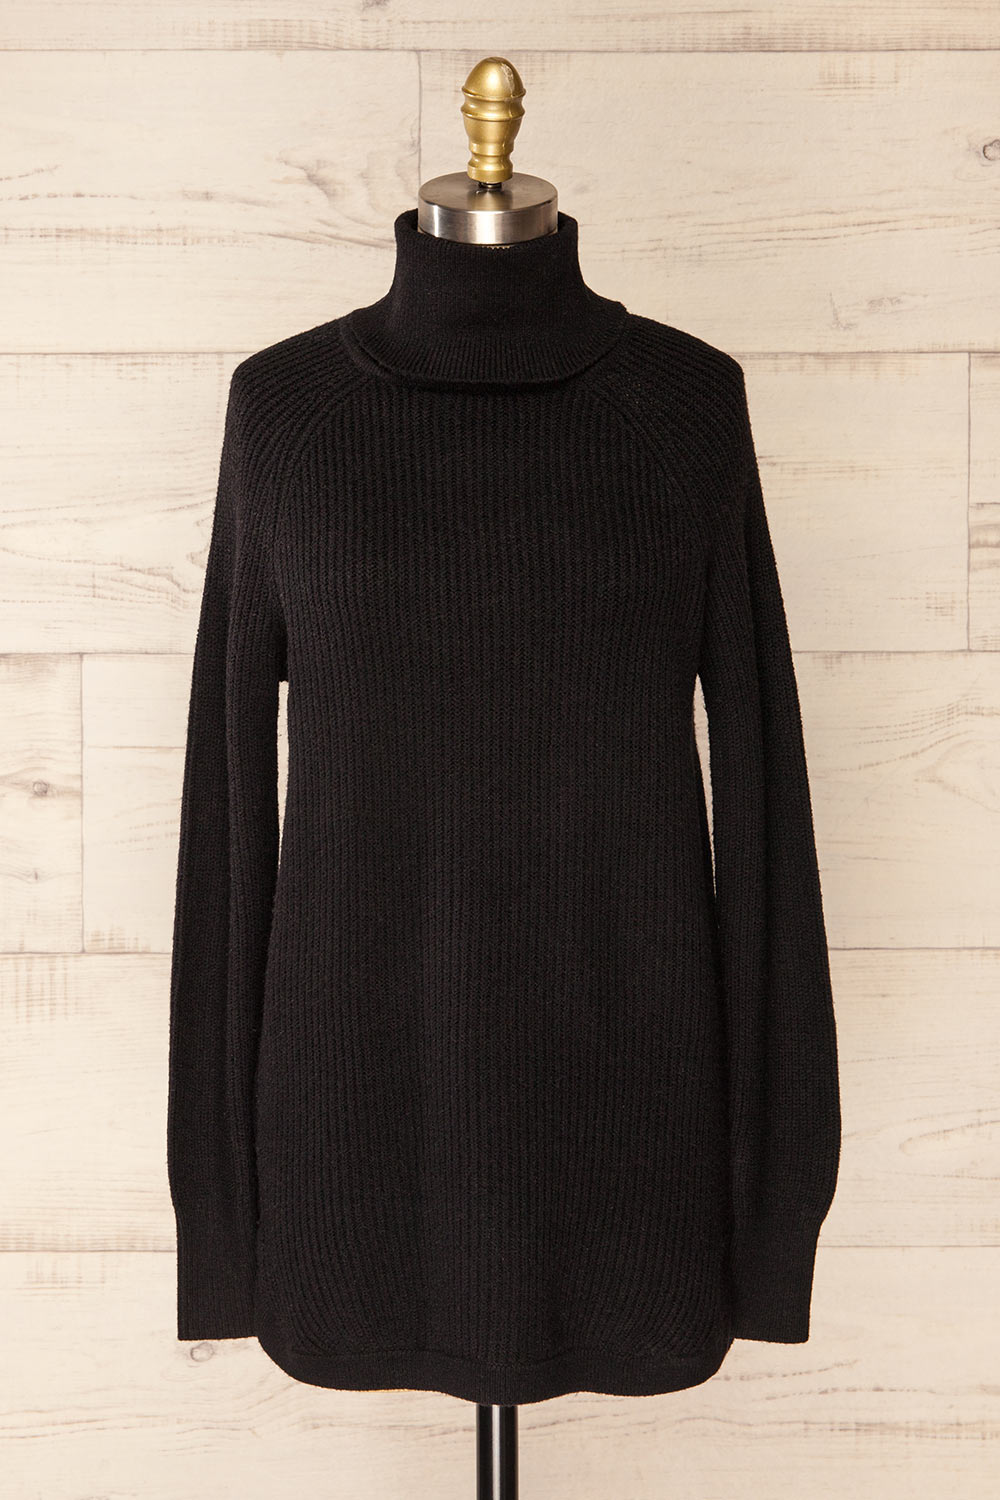 Granby Black Knit Turtleneck Sweater | La petite garçonne front view 